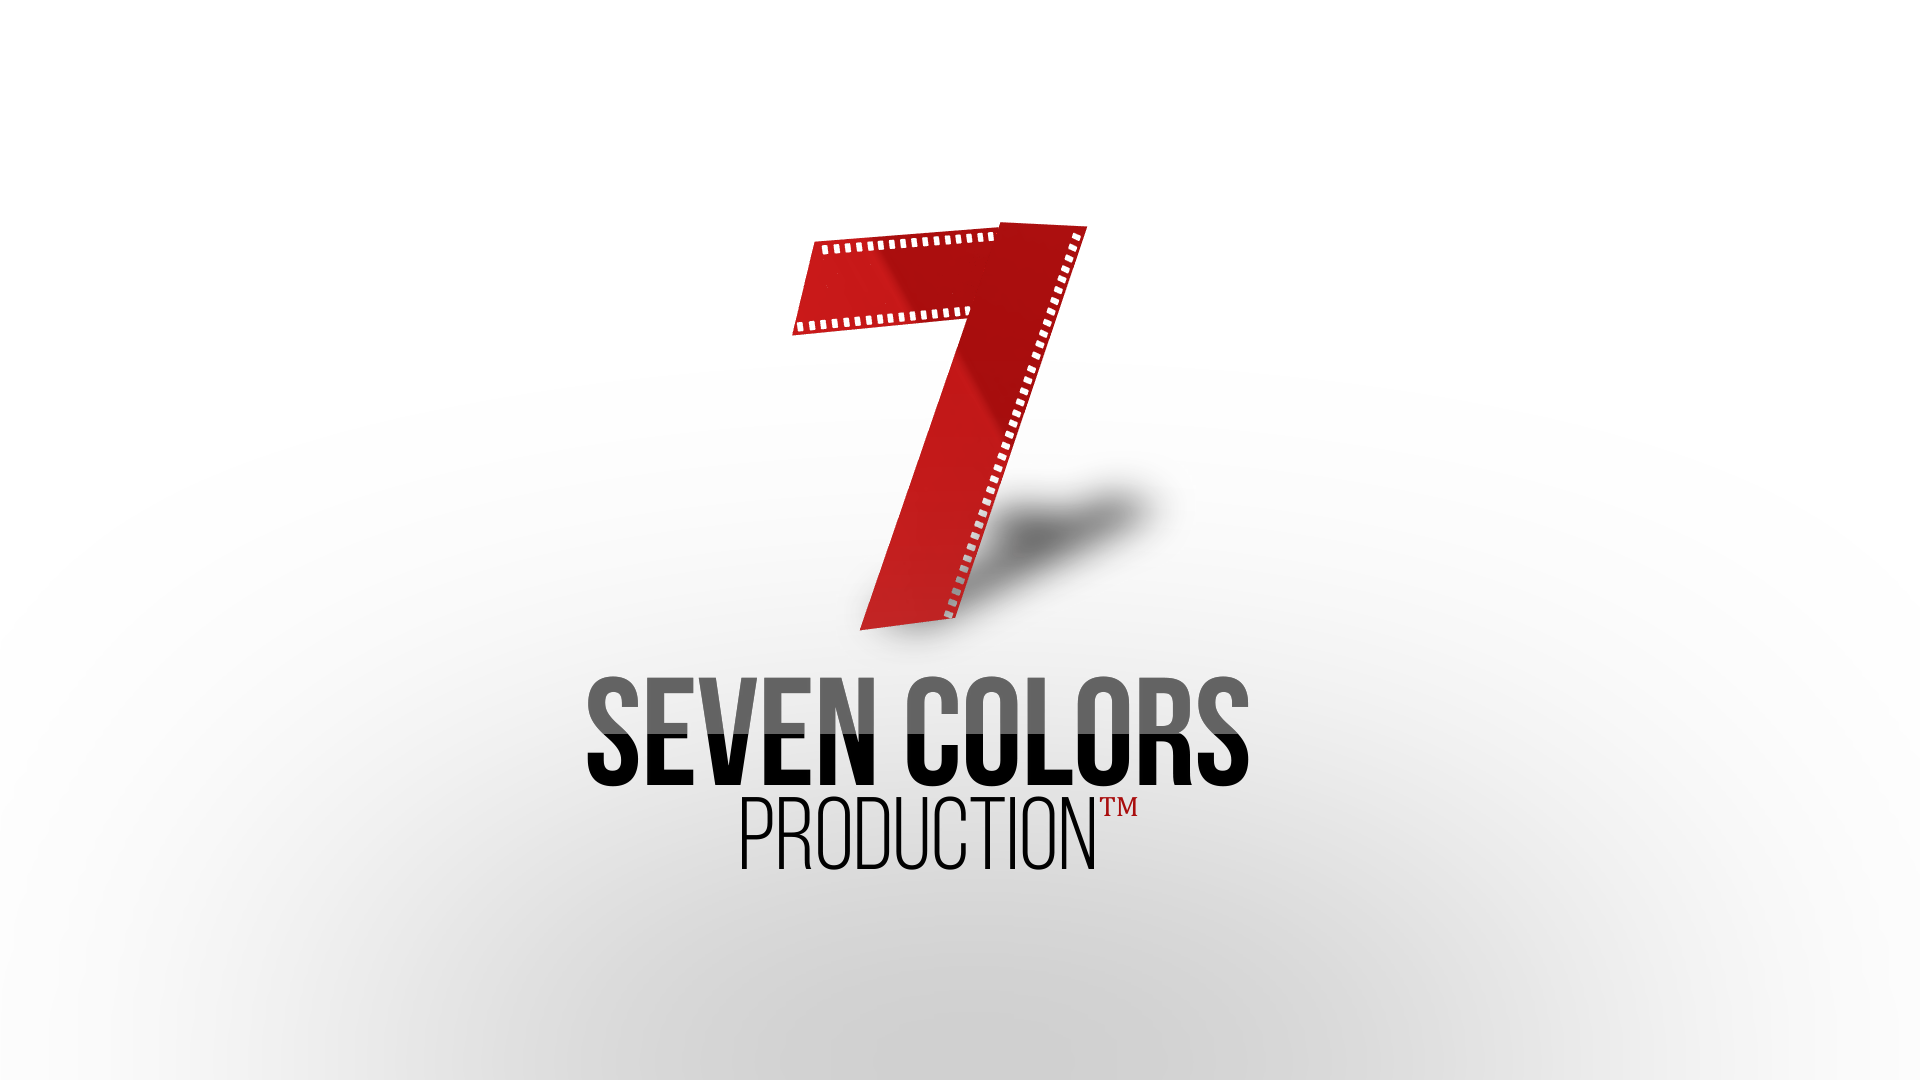 SEVEN COLORS (PRODUCTION)